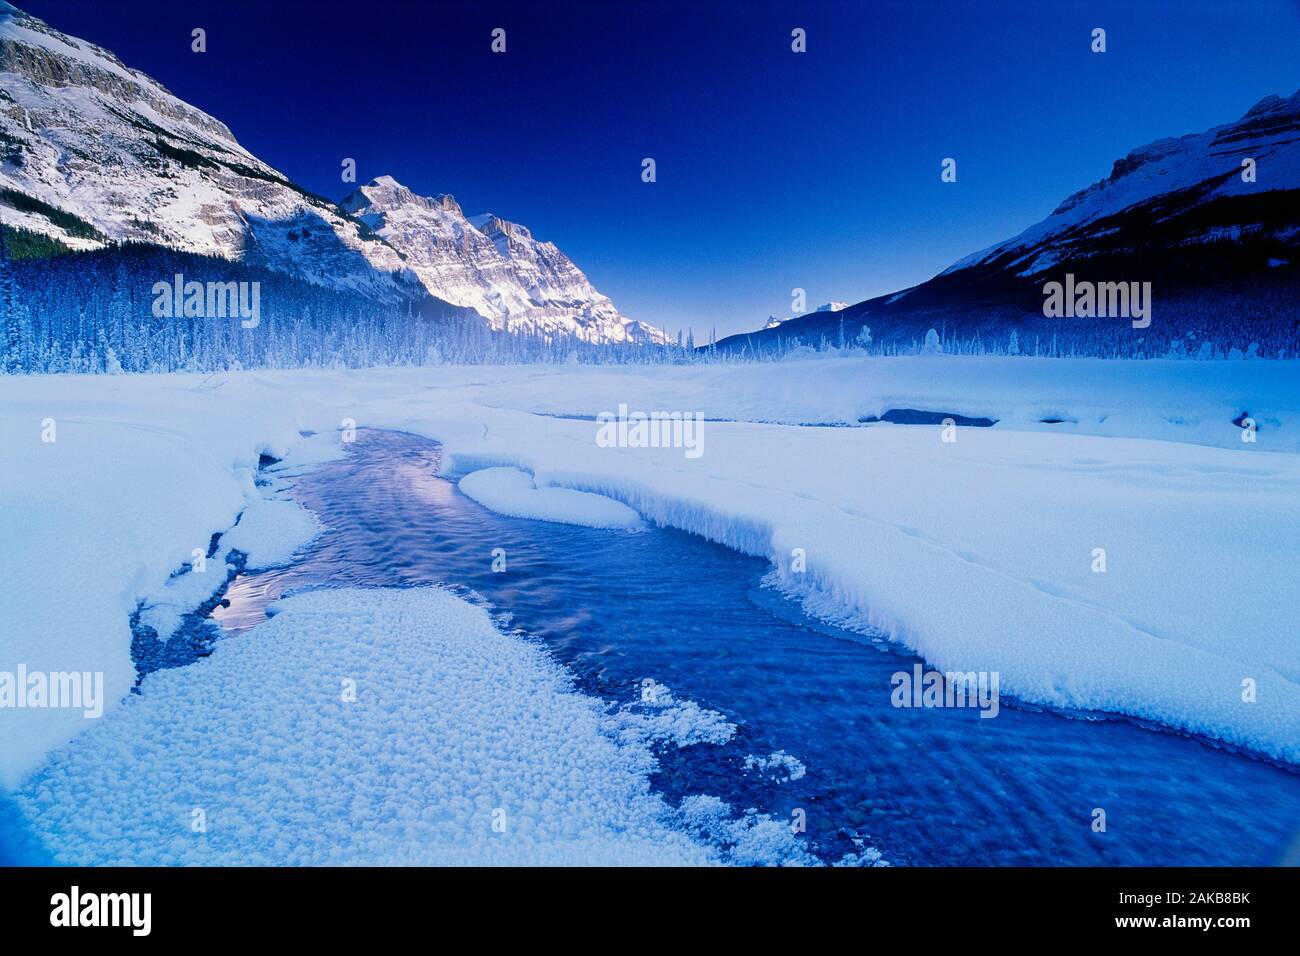 Lac gelé recouvert de neige en hiver, le parc national Banff, Alberta, Canada Banque D'Images